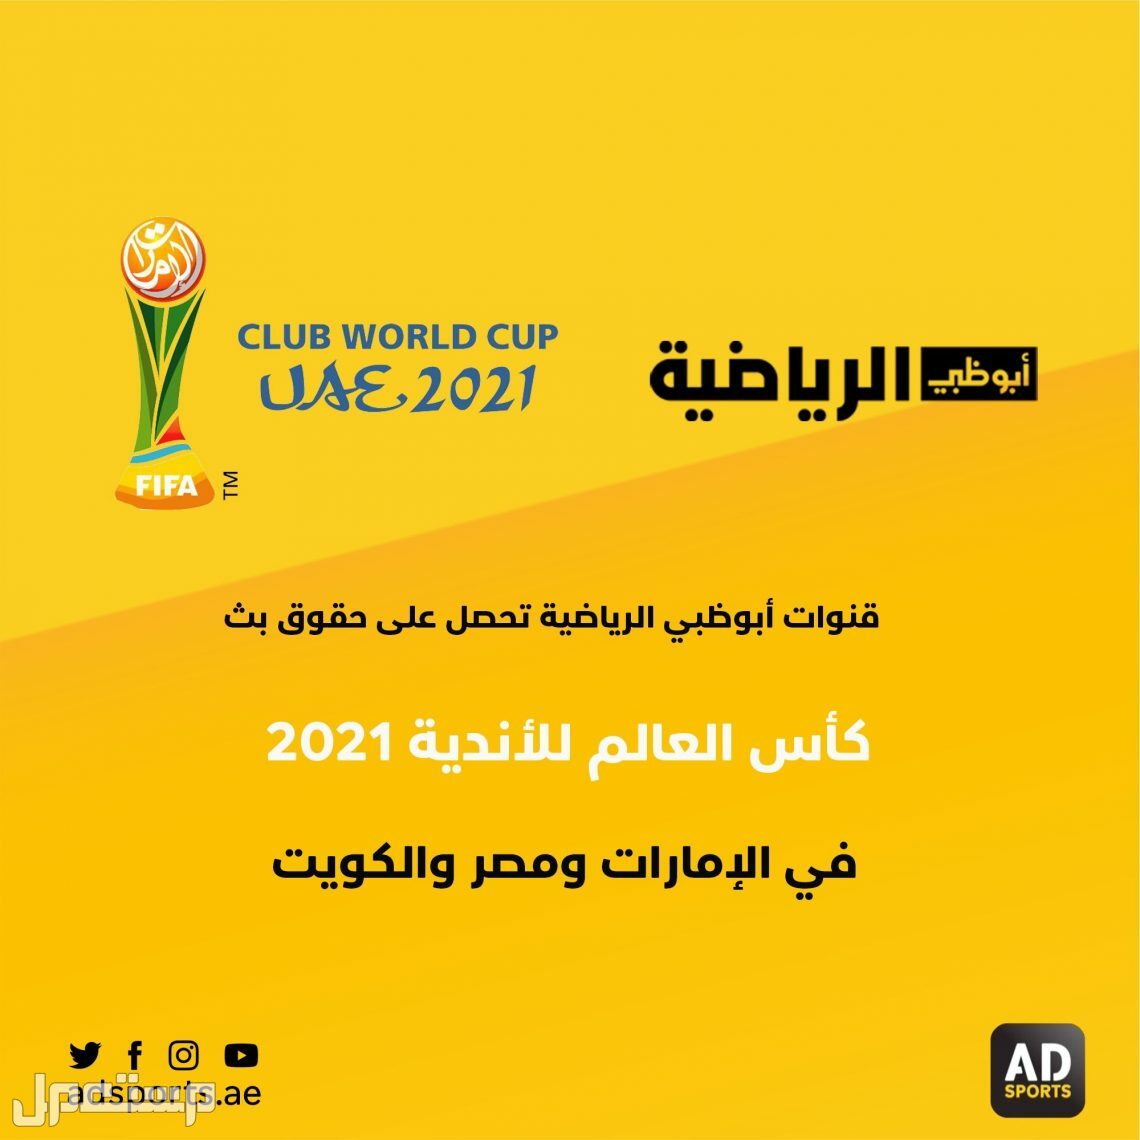 كاس العالم للاندية على أبوظبي الرياضية كاس العالم للاندية 2022 على أبوظبي الرياضية